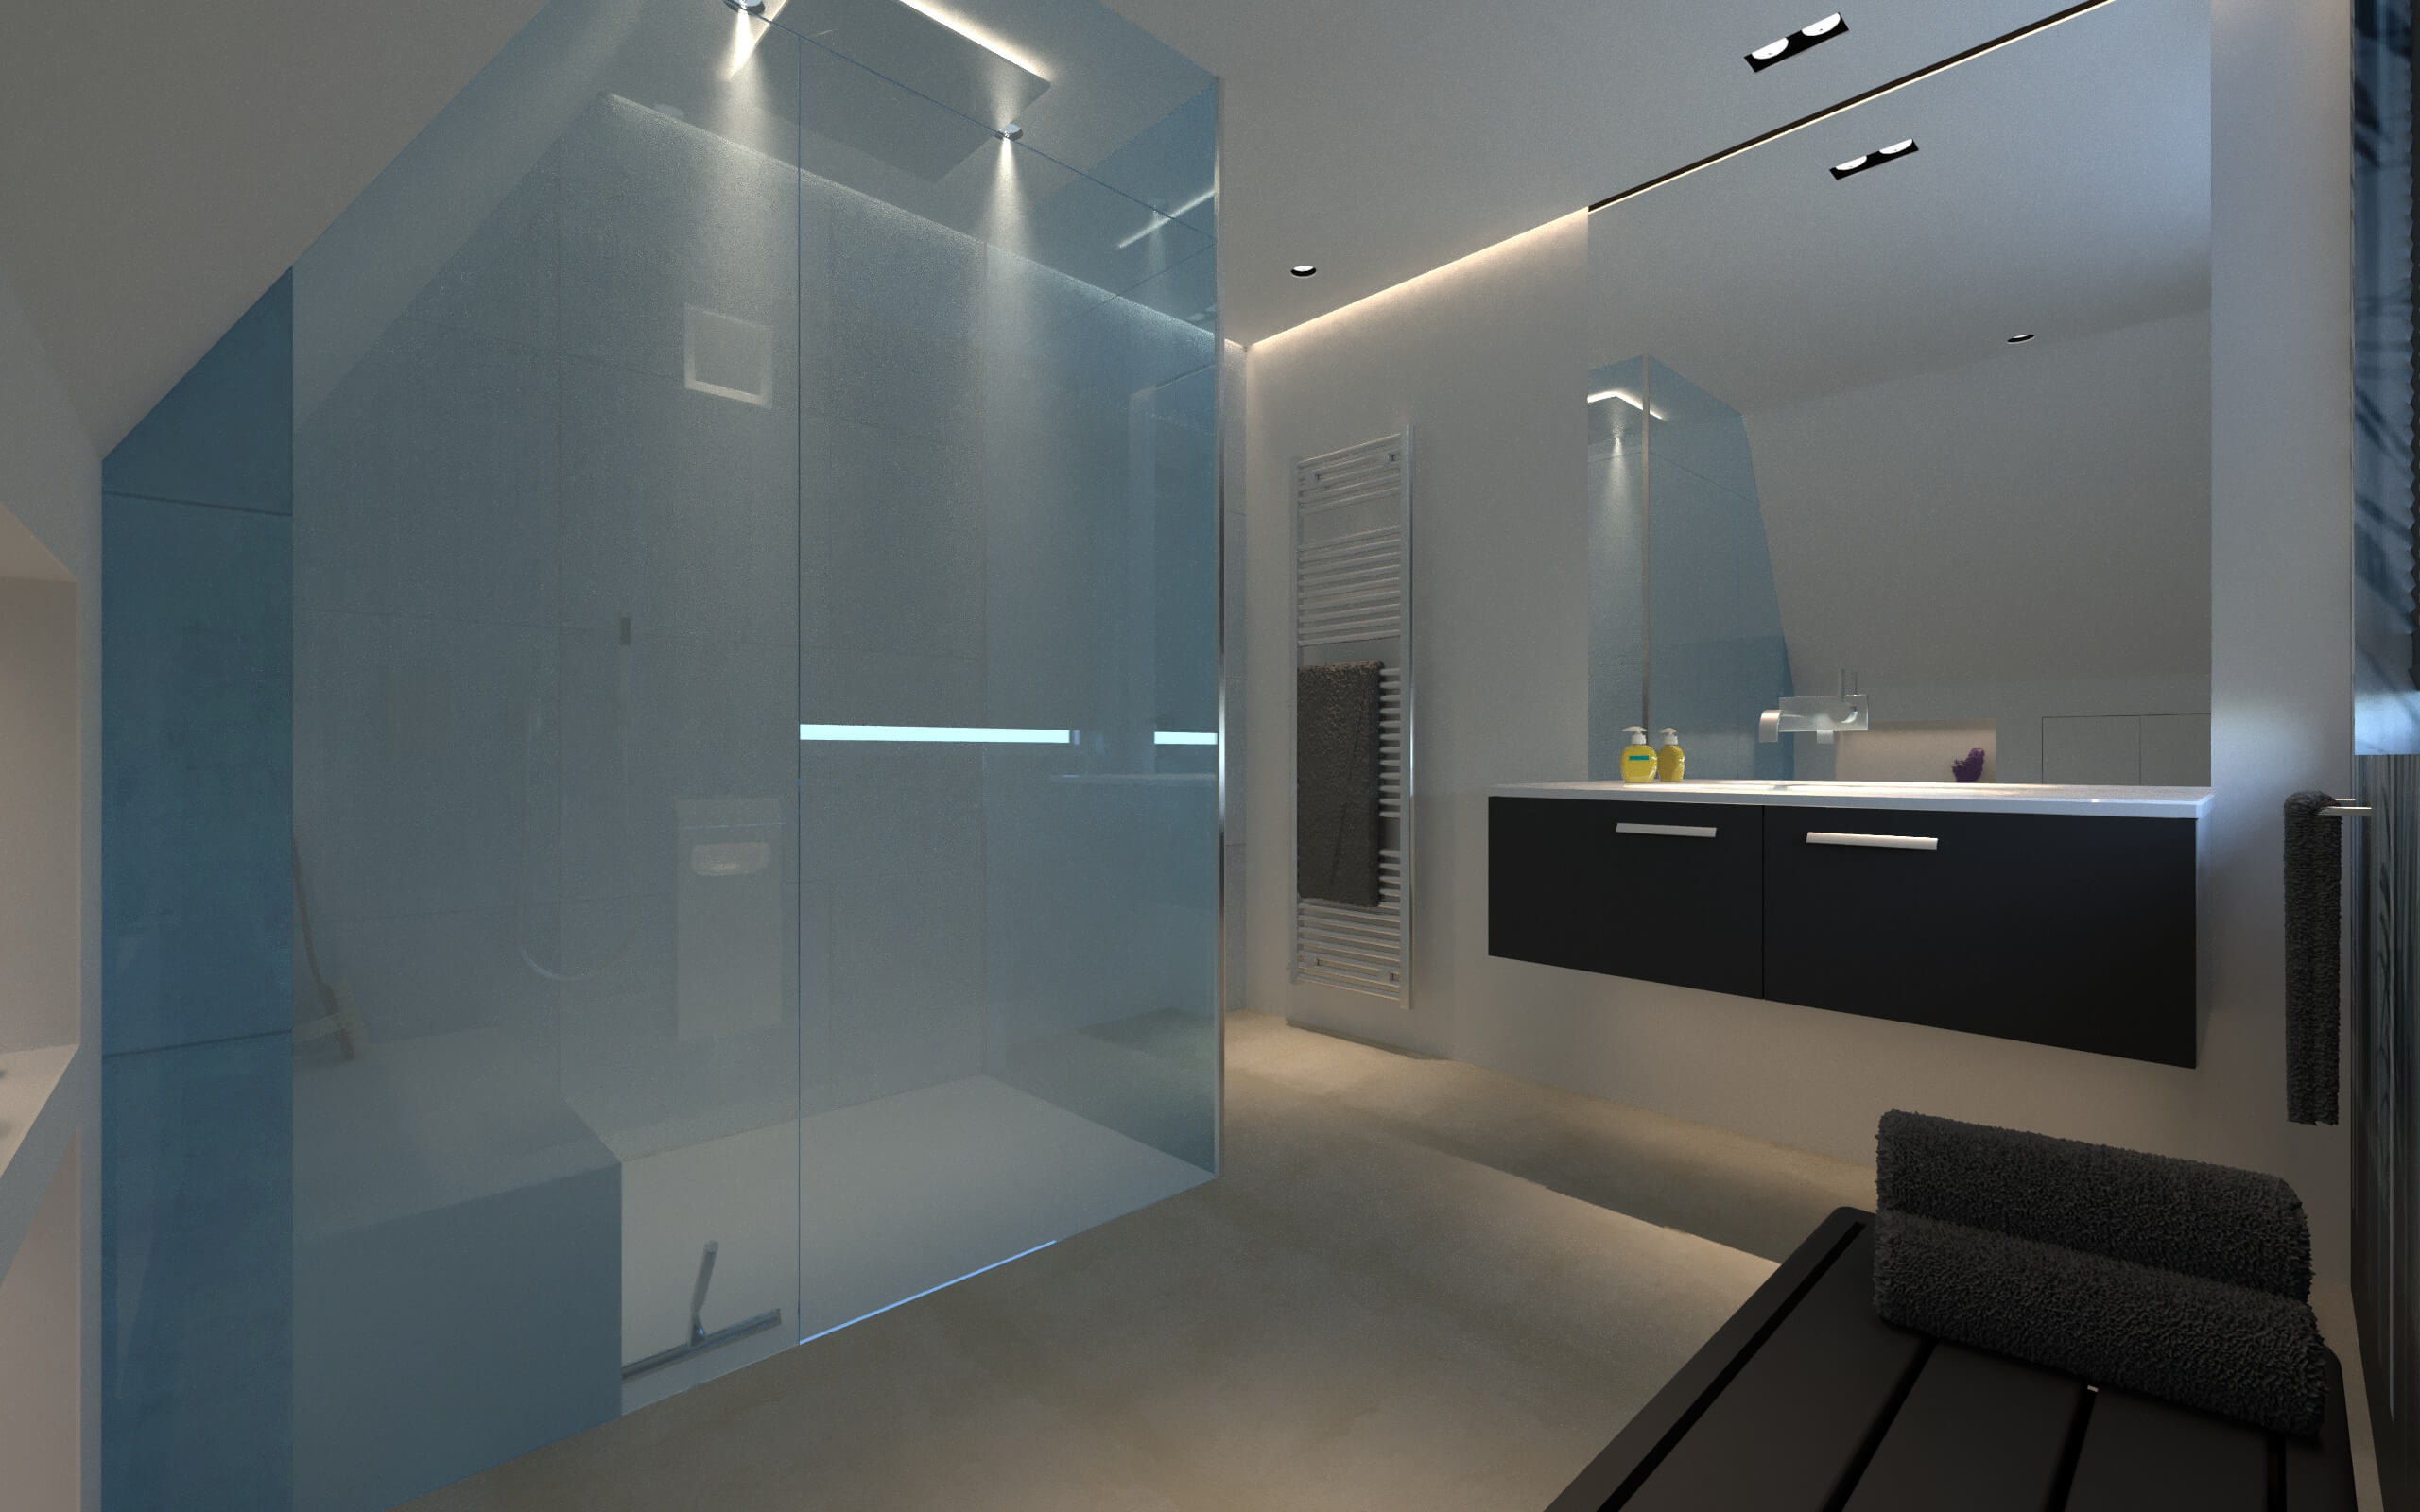 Modernes Bad in Grautönen mit Glasabtrennung für Dusche